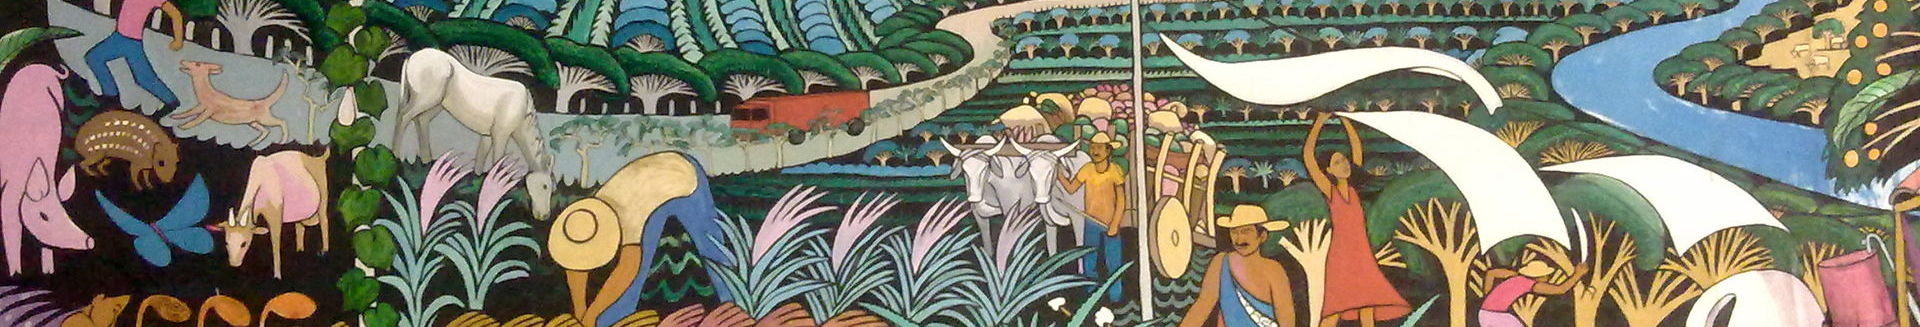 Mural Masaya